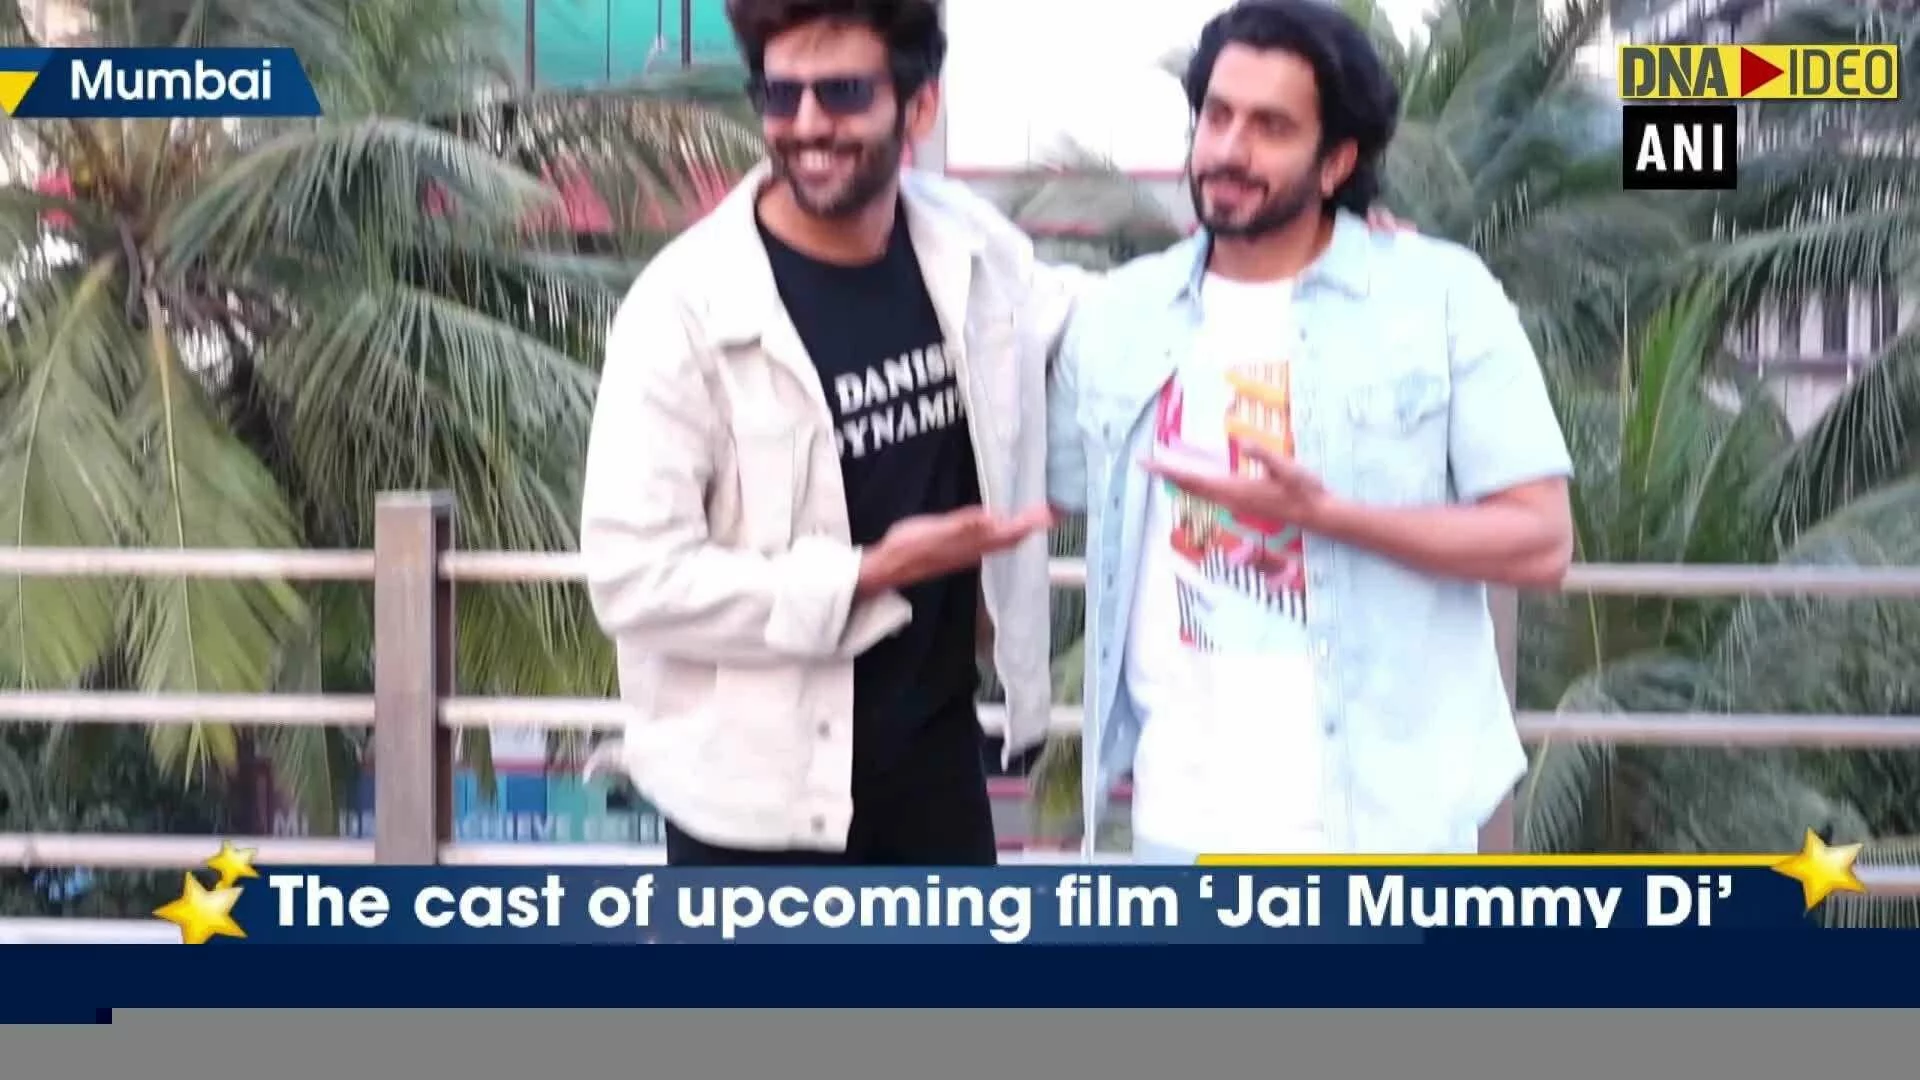 ‘Jai Mummy Di’ cast promotes film in Mumbai | Latest News & Updates at DNAIndia.com